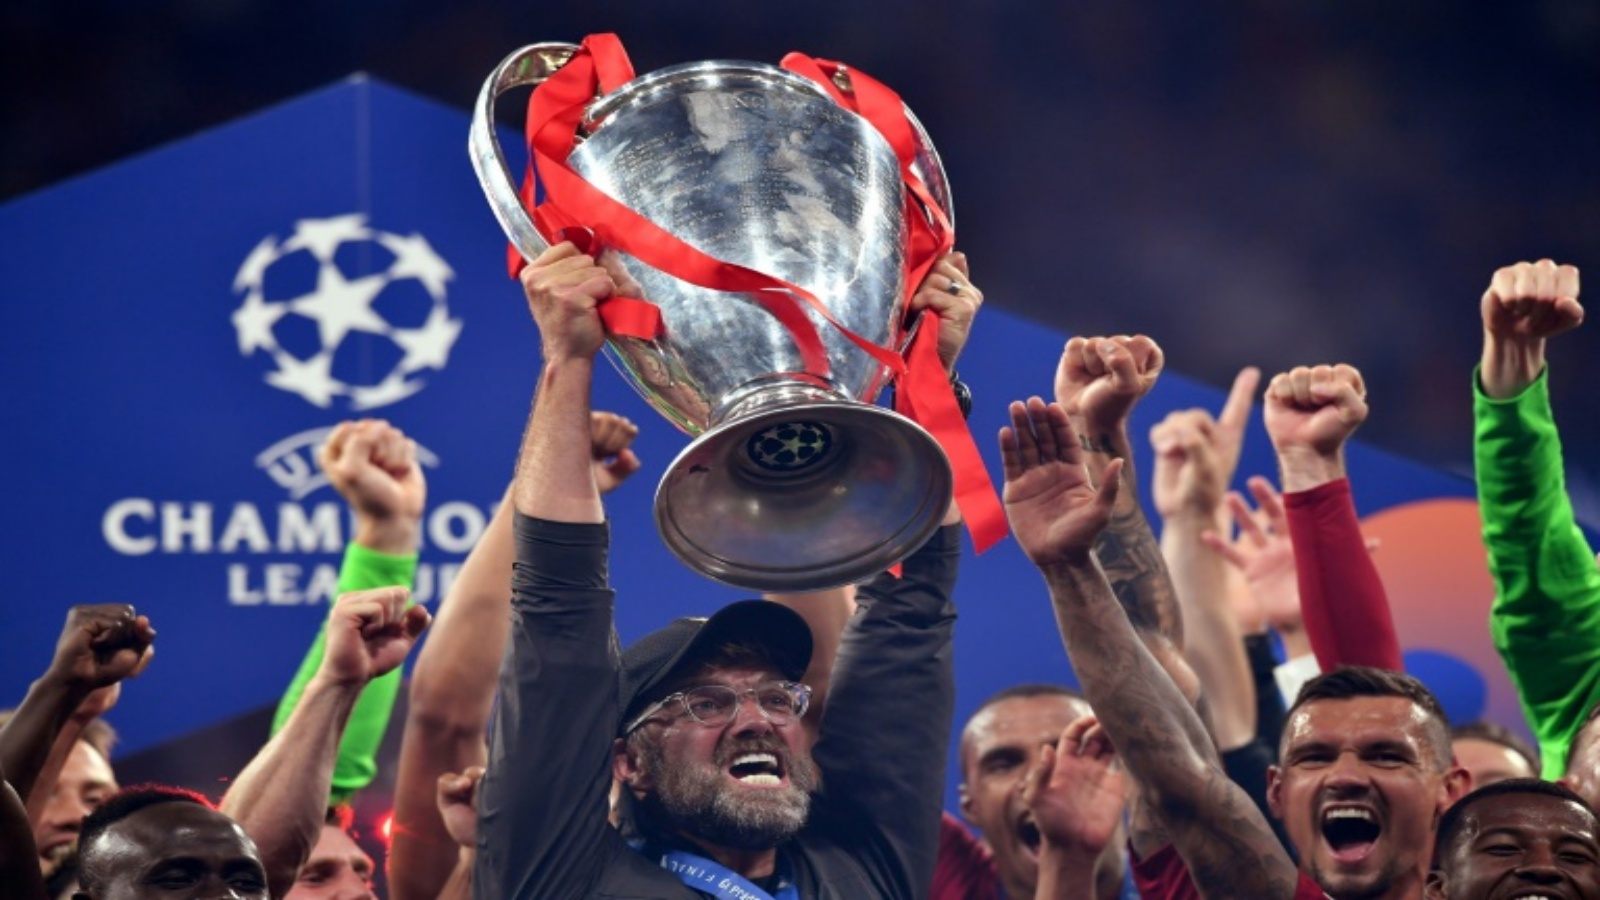  الالماني يورغن كلوب مدرب ليفربول الانكليزي يرفع كأس مسابقة دوري أبطال أوروبا في 1 حزيران/يونيو 2019.